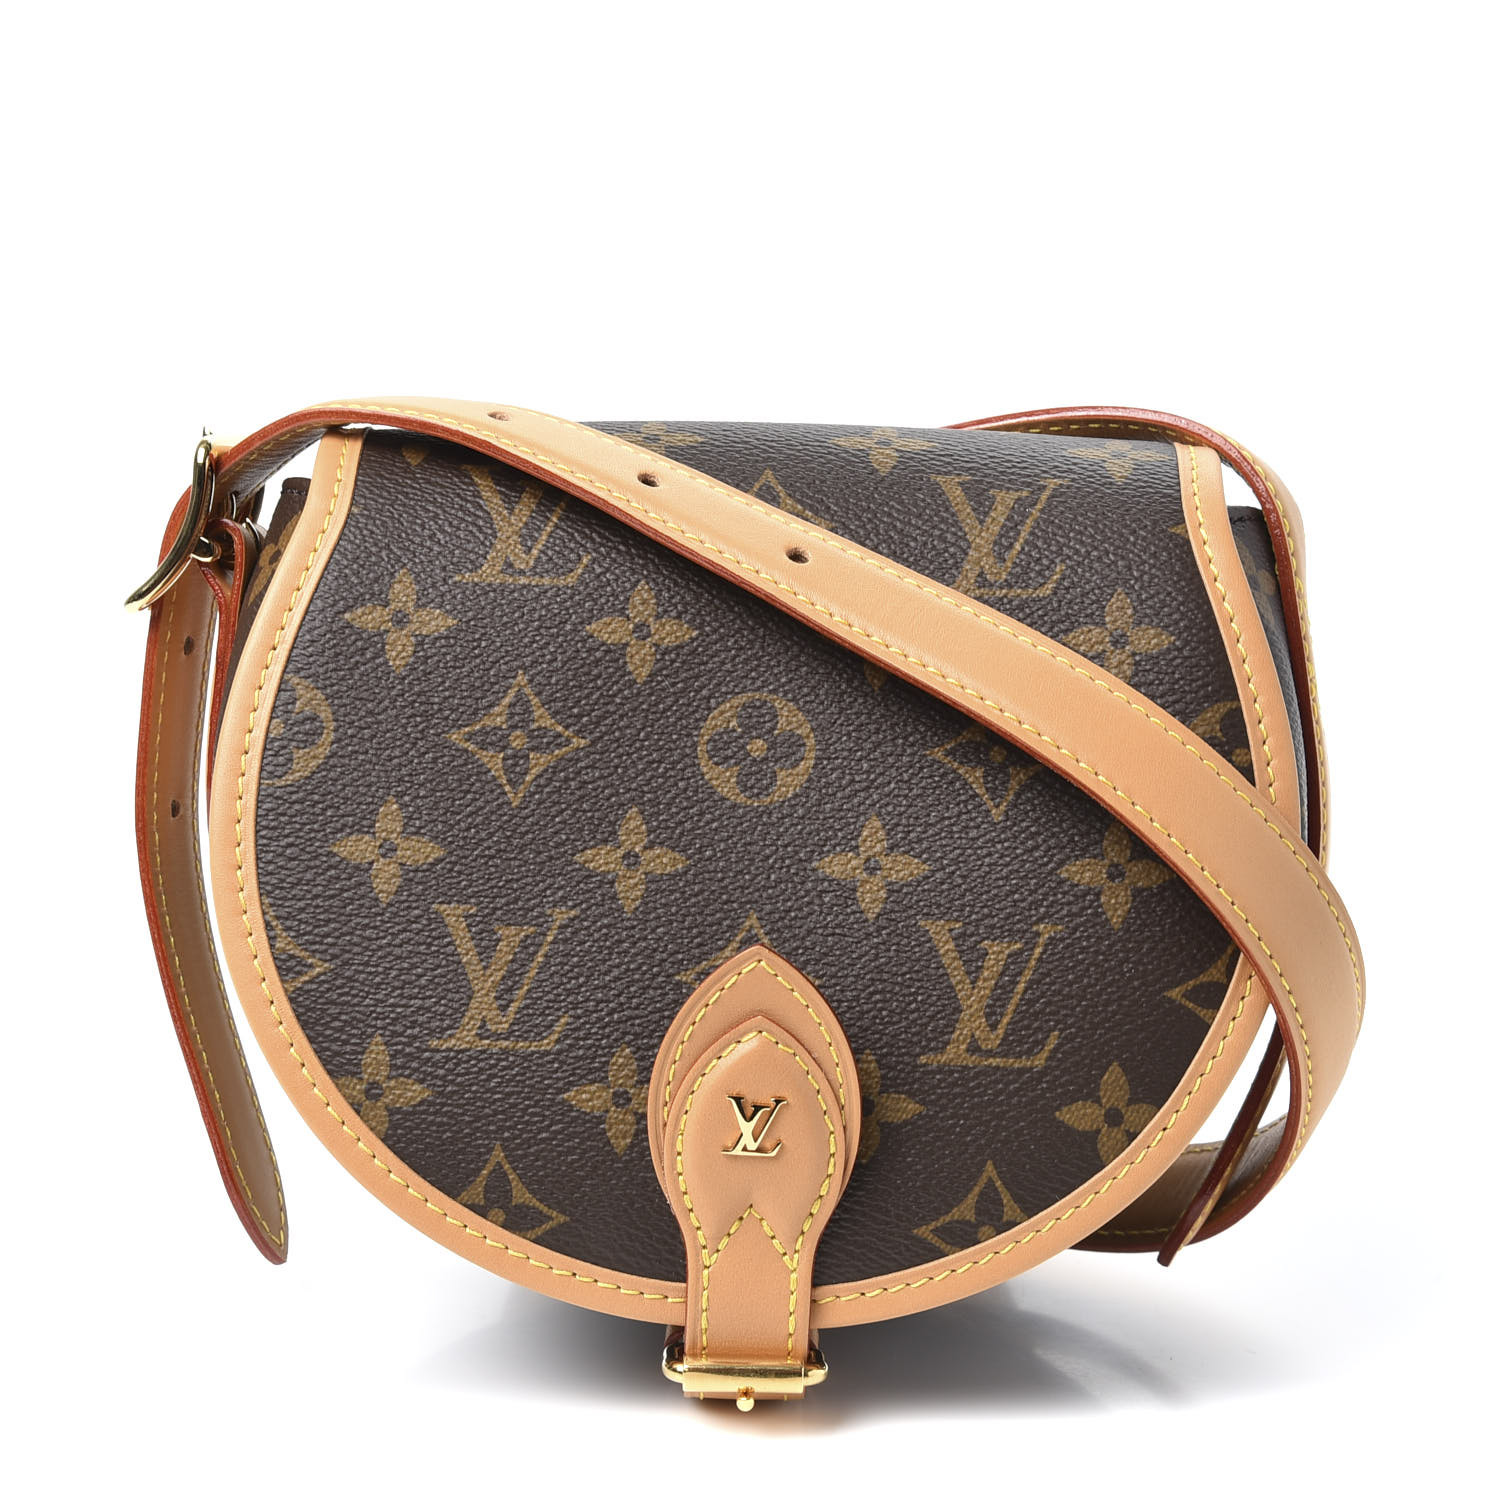 Louis Vuitton unboxing TAMBOURINE bag with comparison Boute Chapeau Souple  #lvtambourine #unboxing 